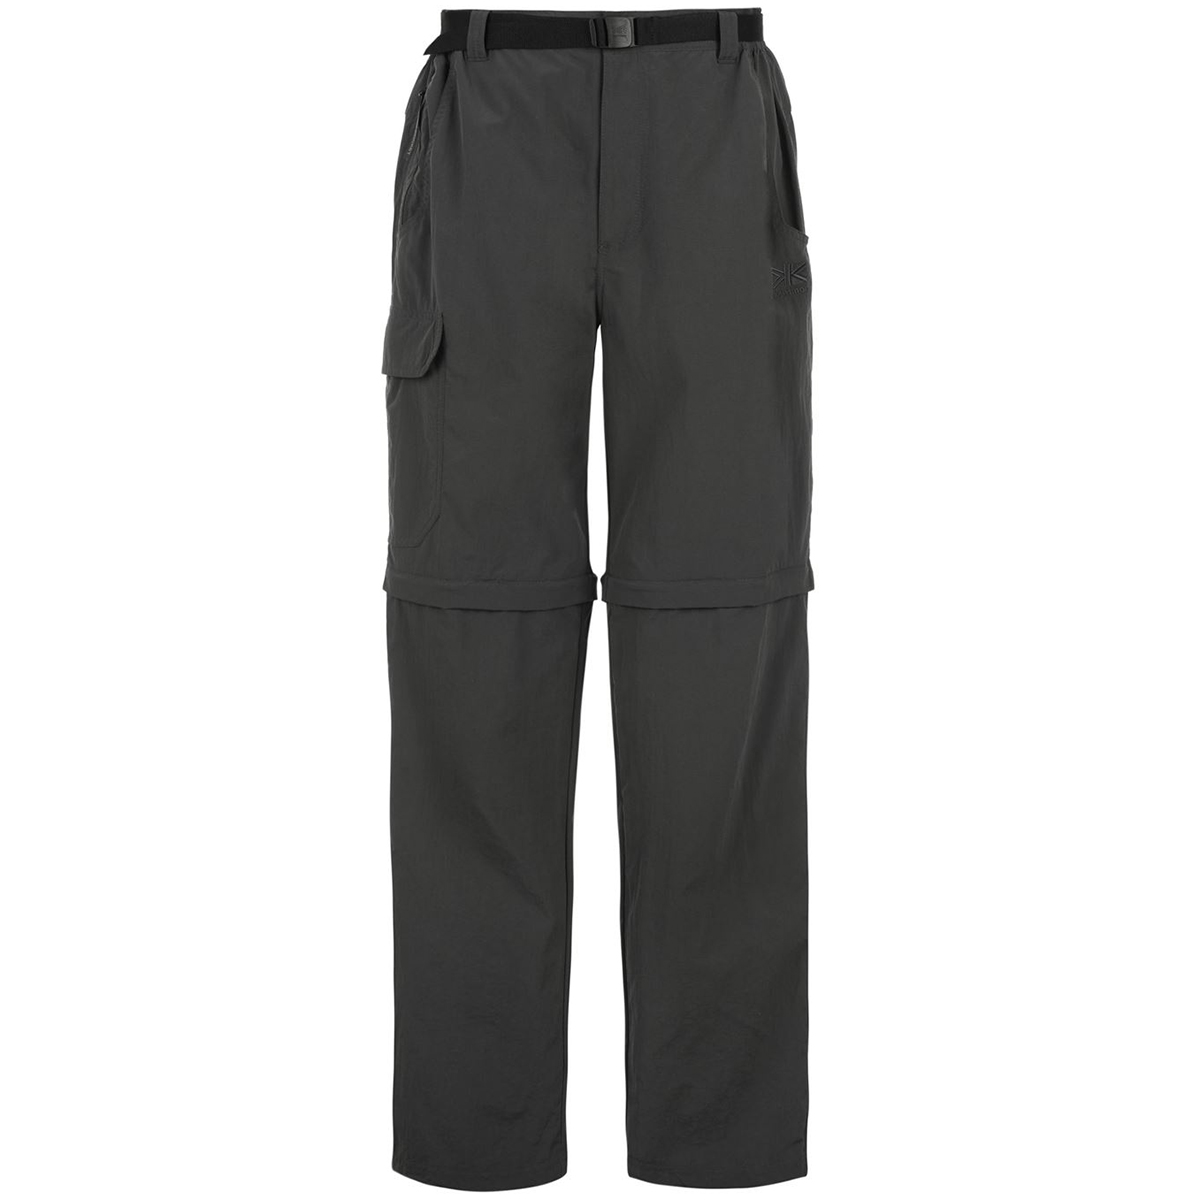 Karrimor Men's Zip-Off Pants - Black, 3XL